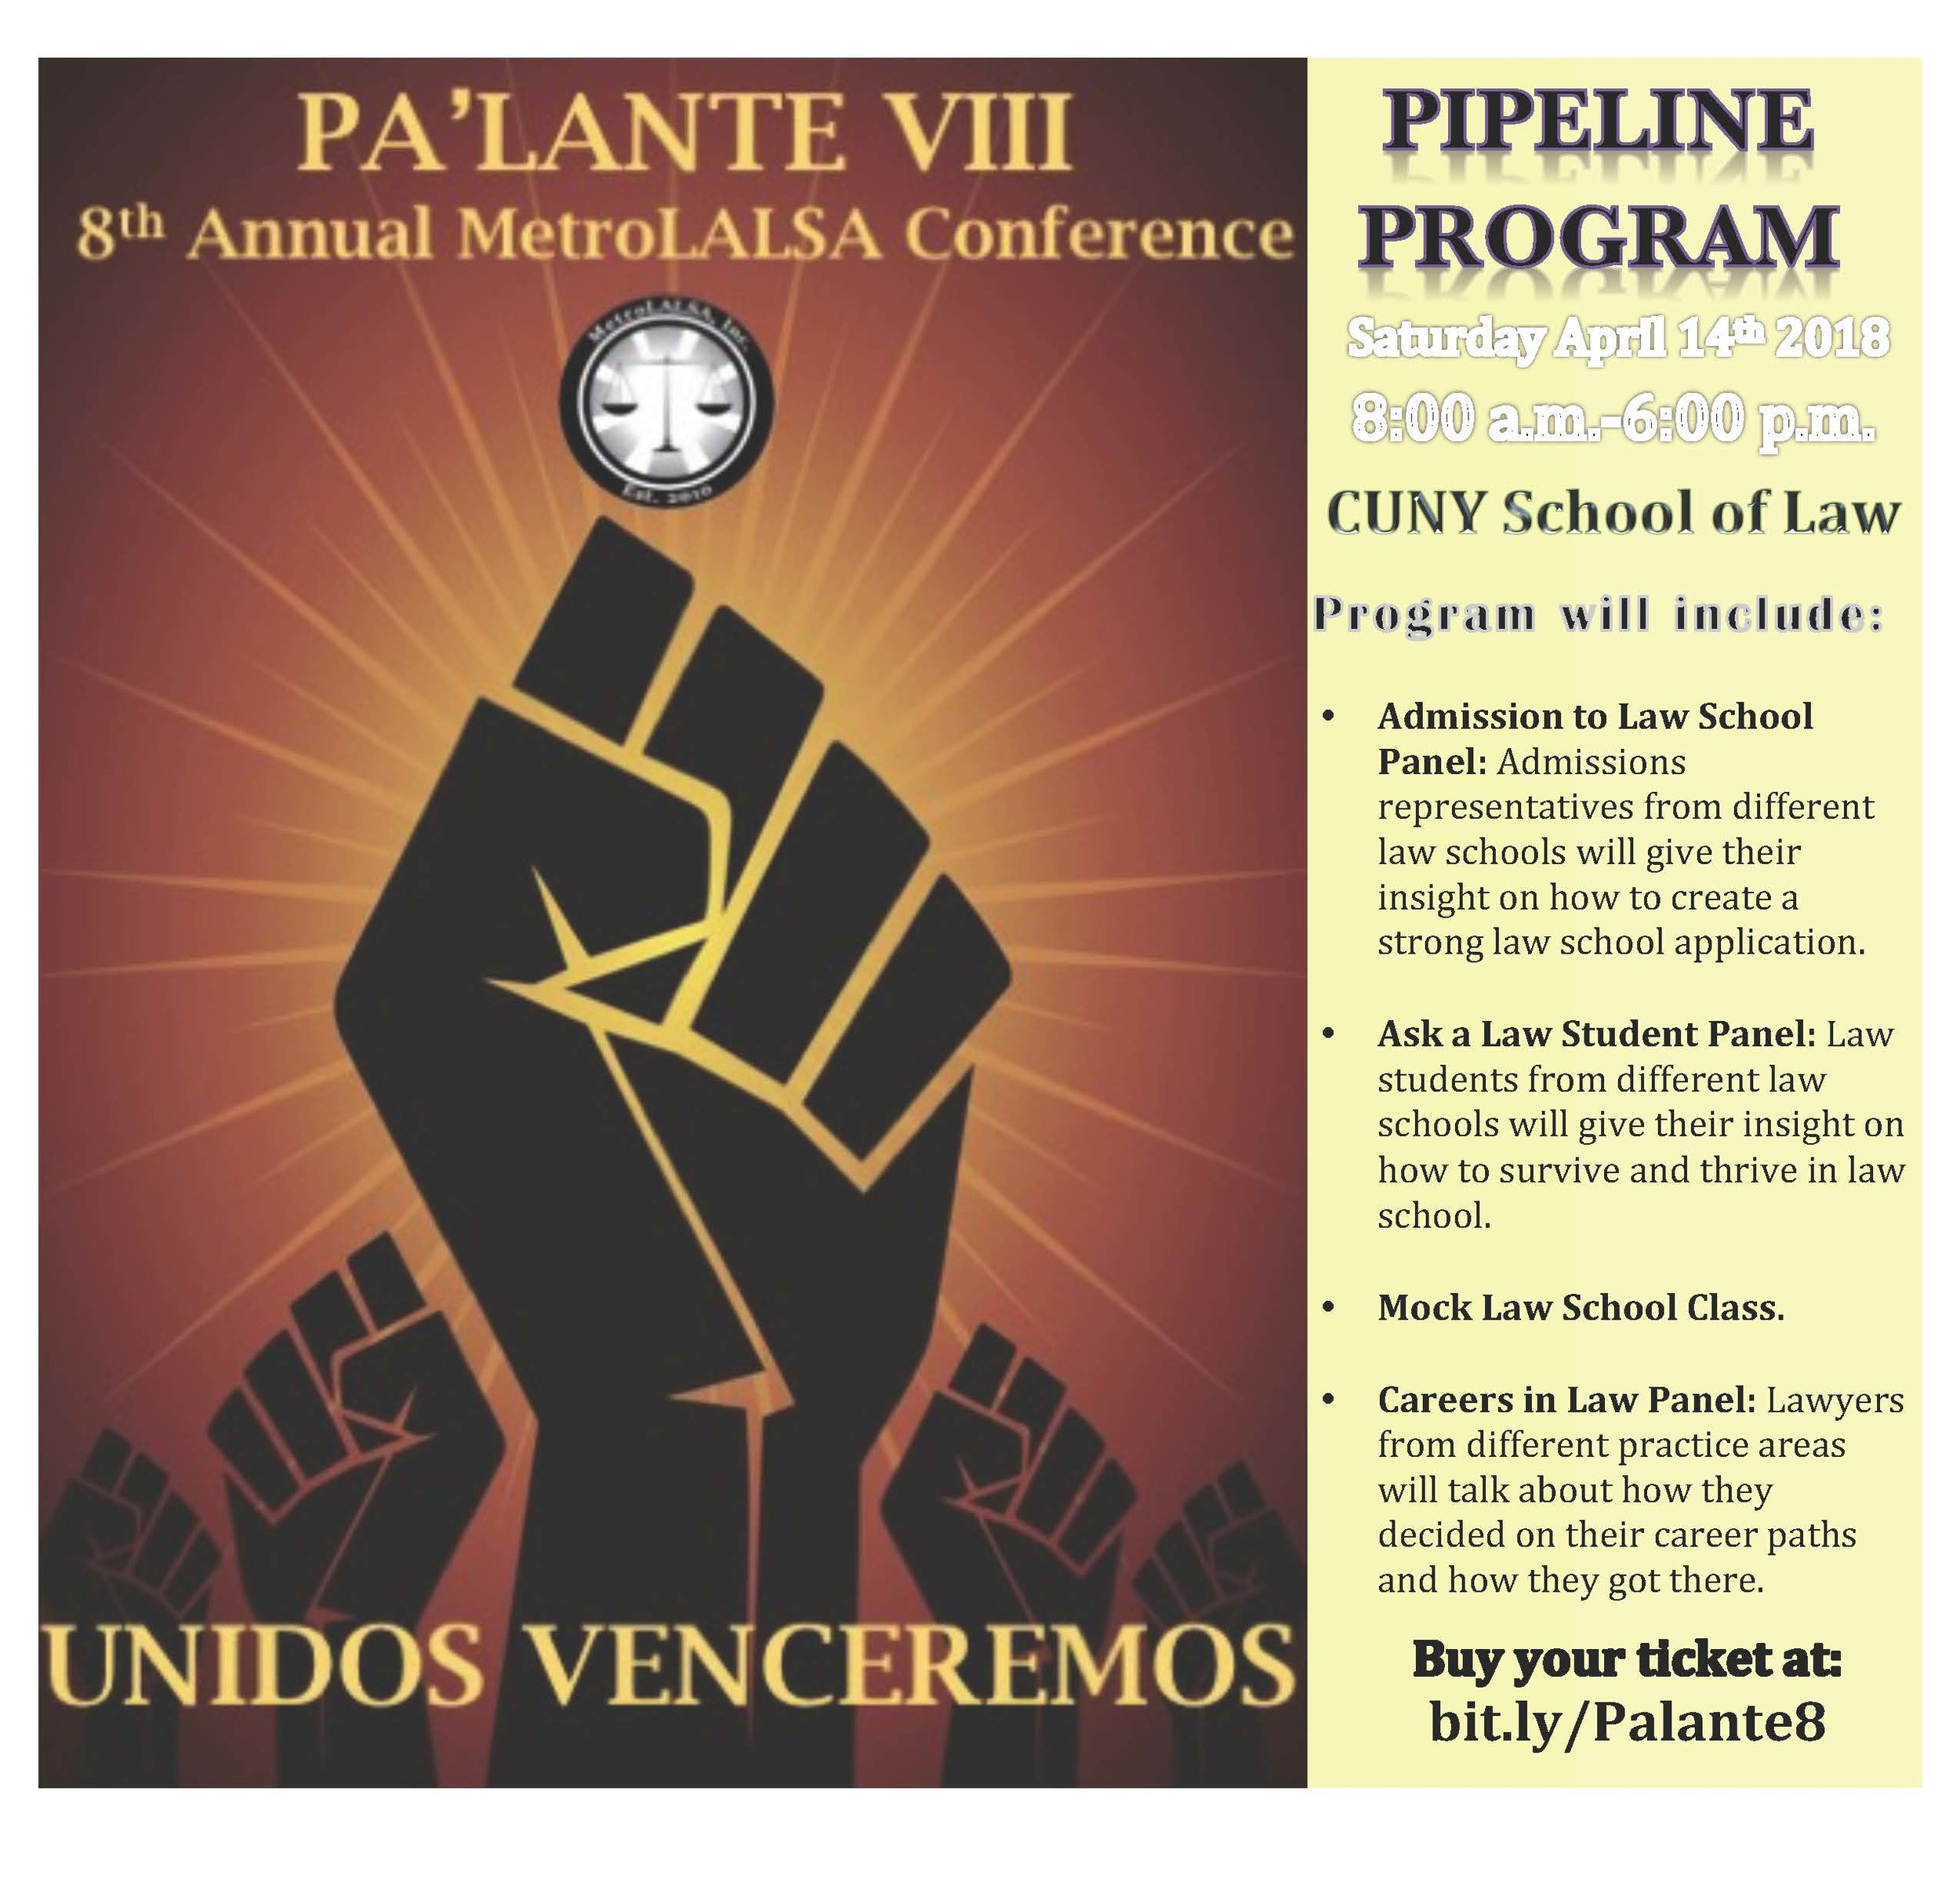 pipeline program.JPG